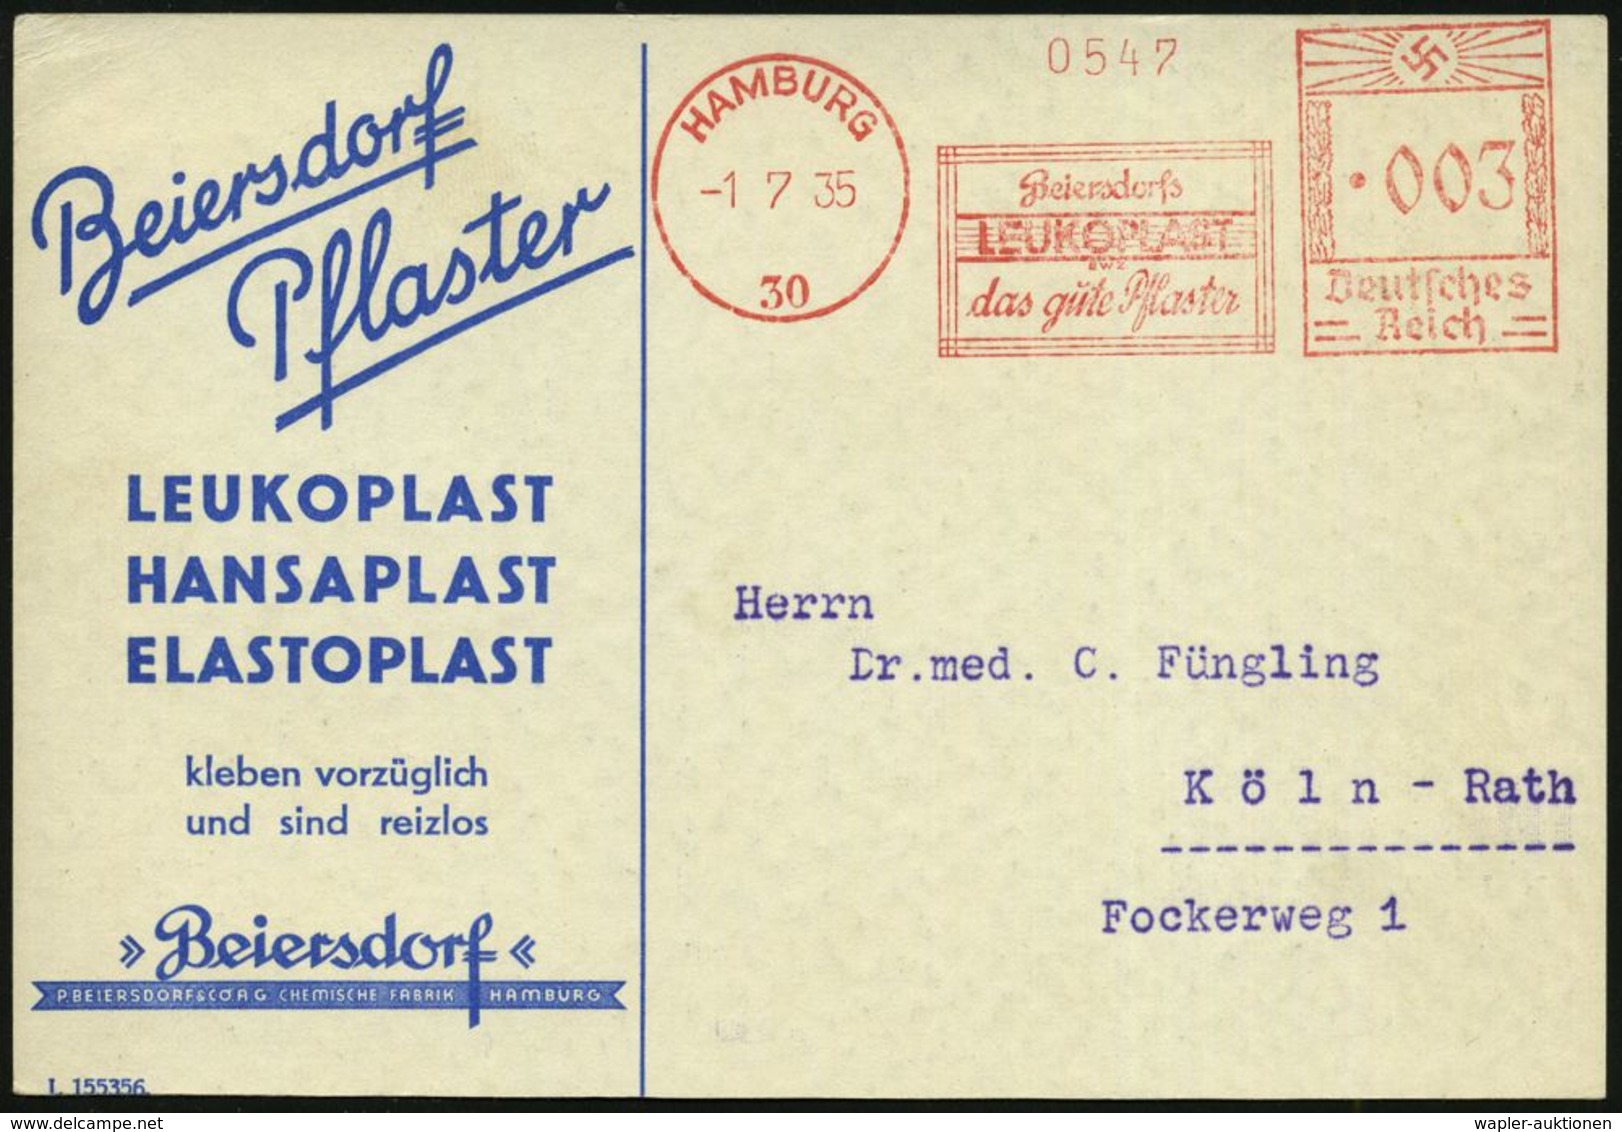 MEDIZINISCHE AUSRÜSTUNG & INSTRUMENTE : HAMBURG/ 30/ Beiersdorfs/ LEUKOPLAST/ Das Gute Pflaster 1935 (1.7.) AFS Klar Auf - Medicine